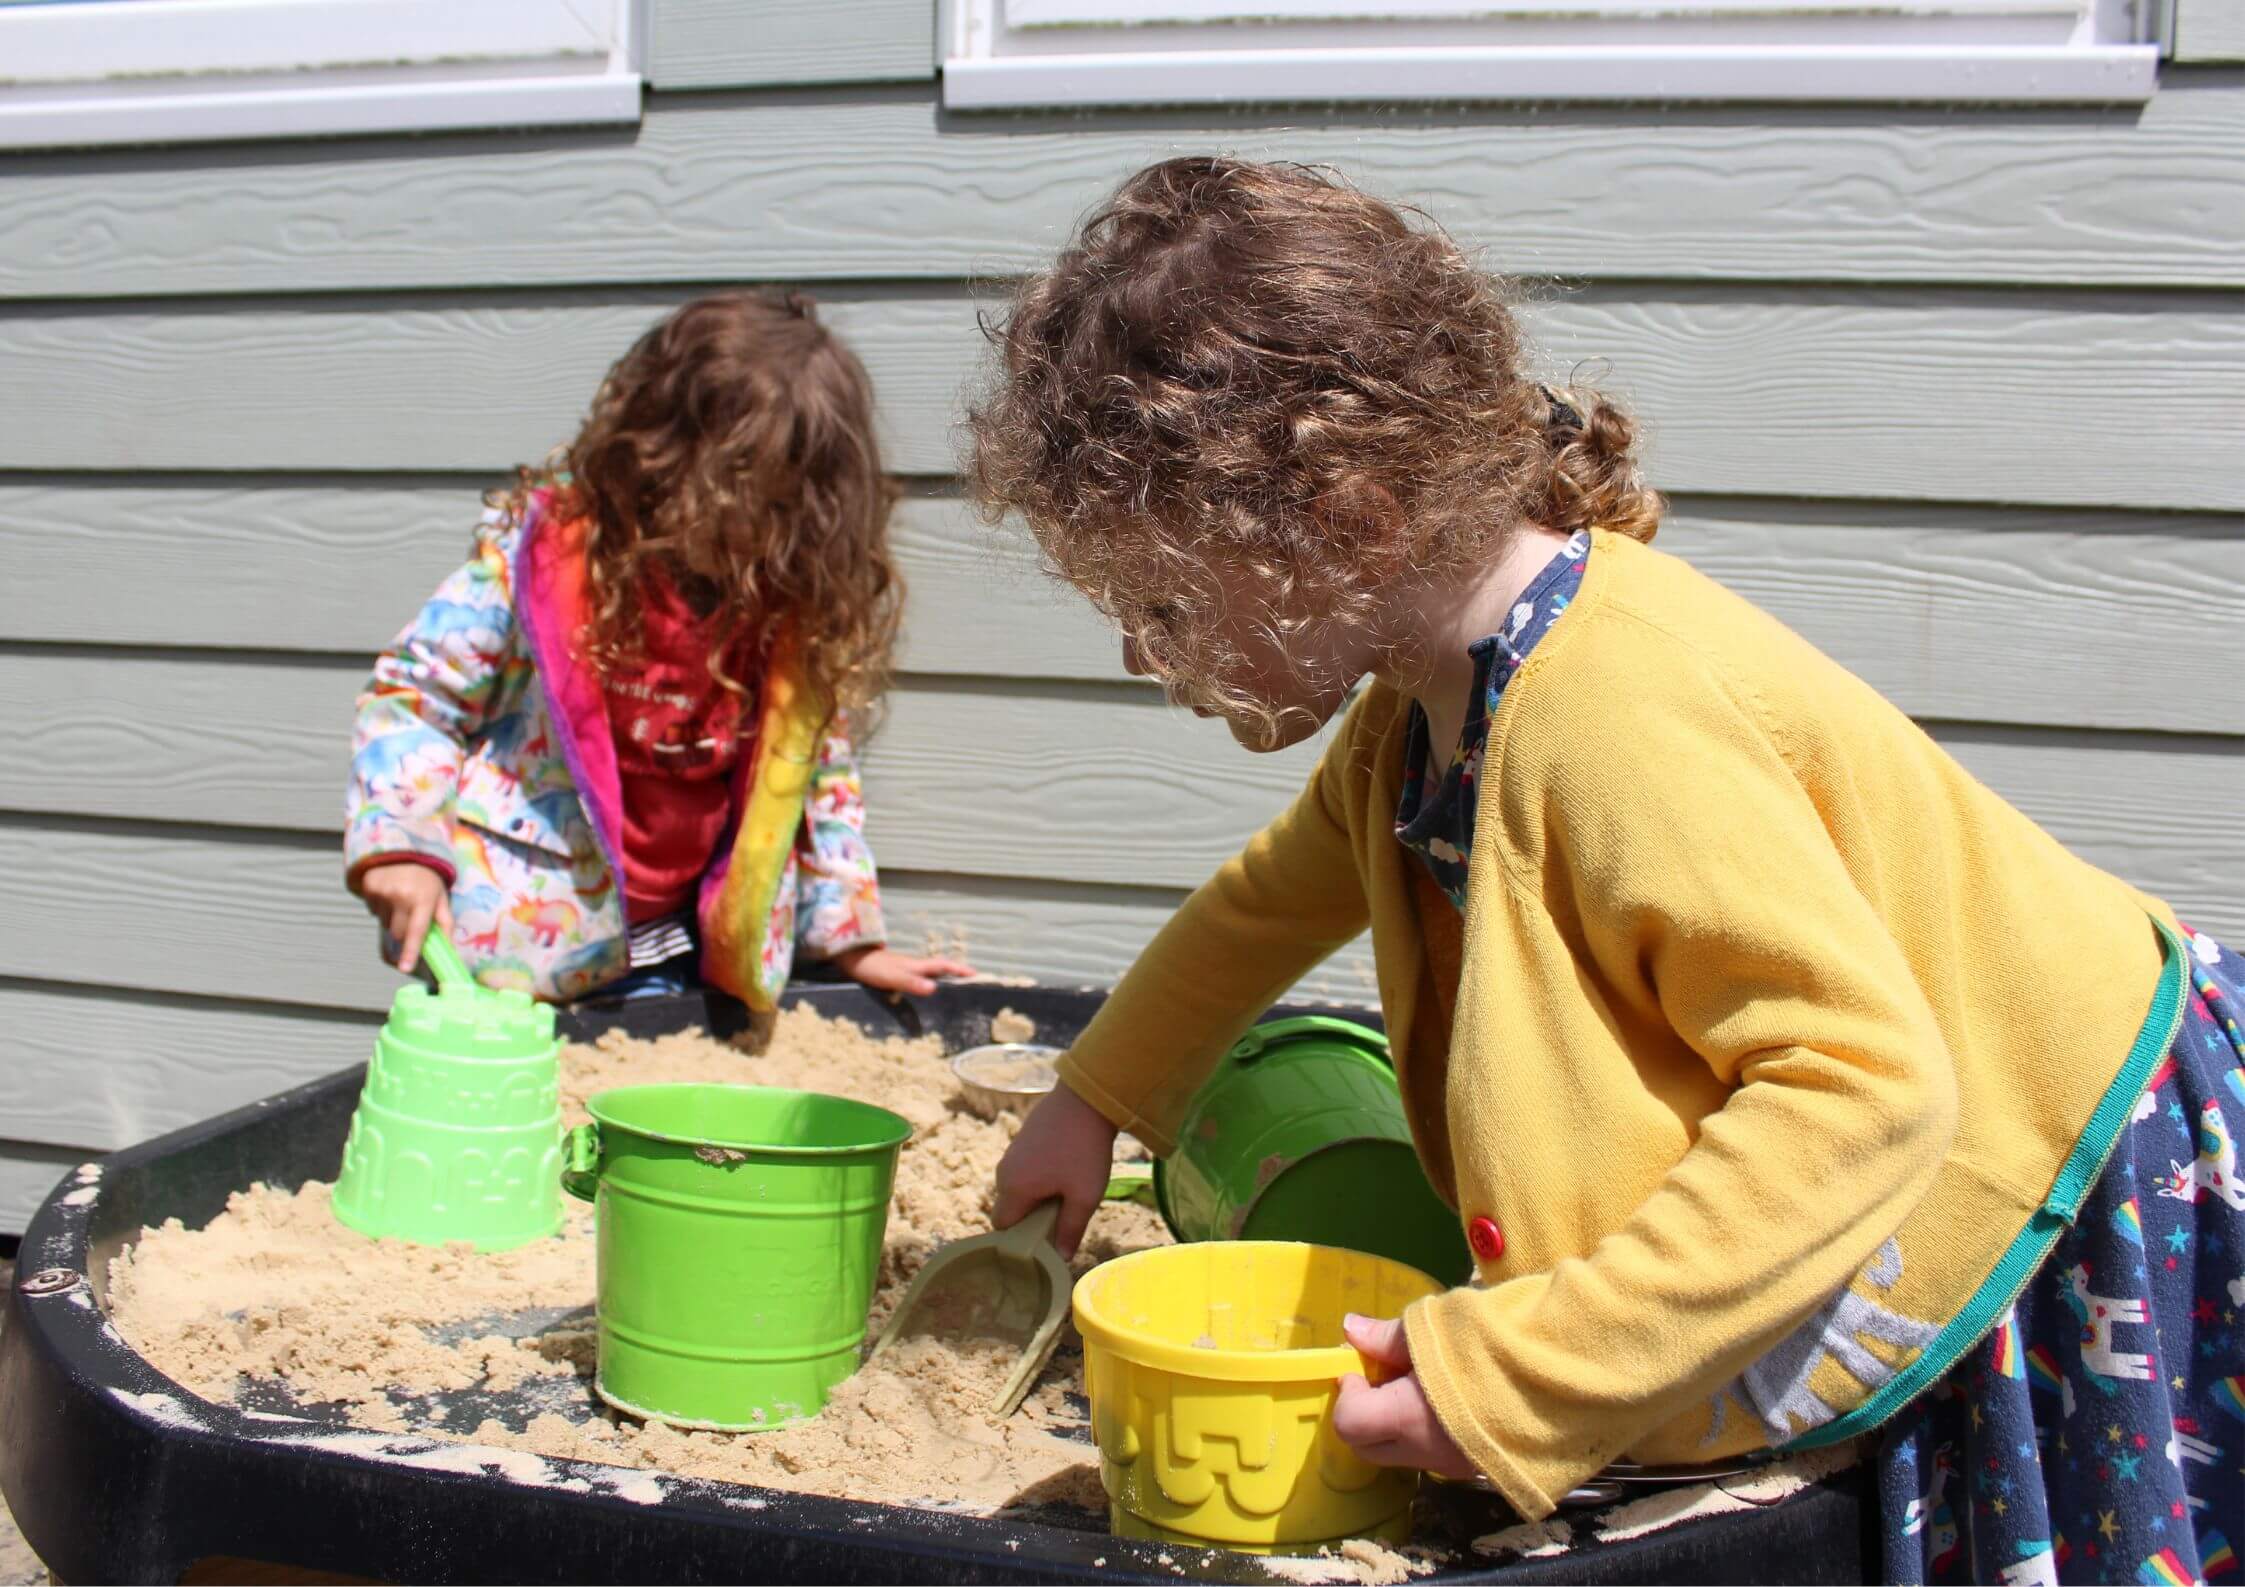 Outdoor childs sandbox